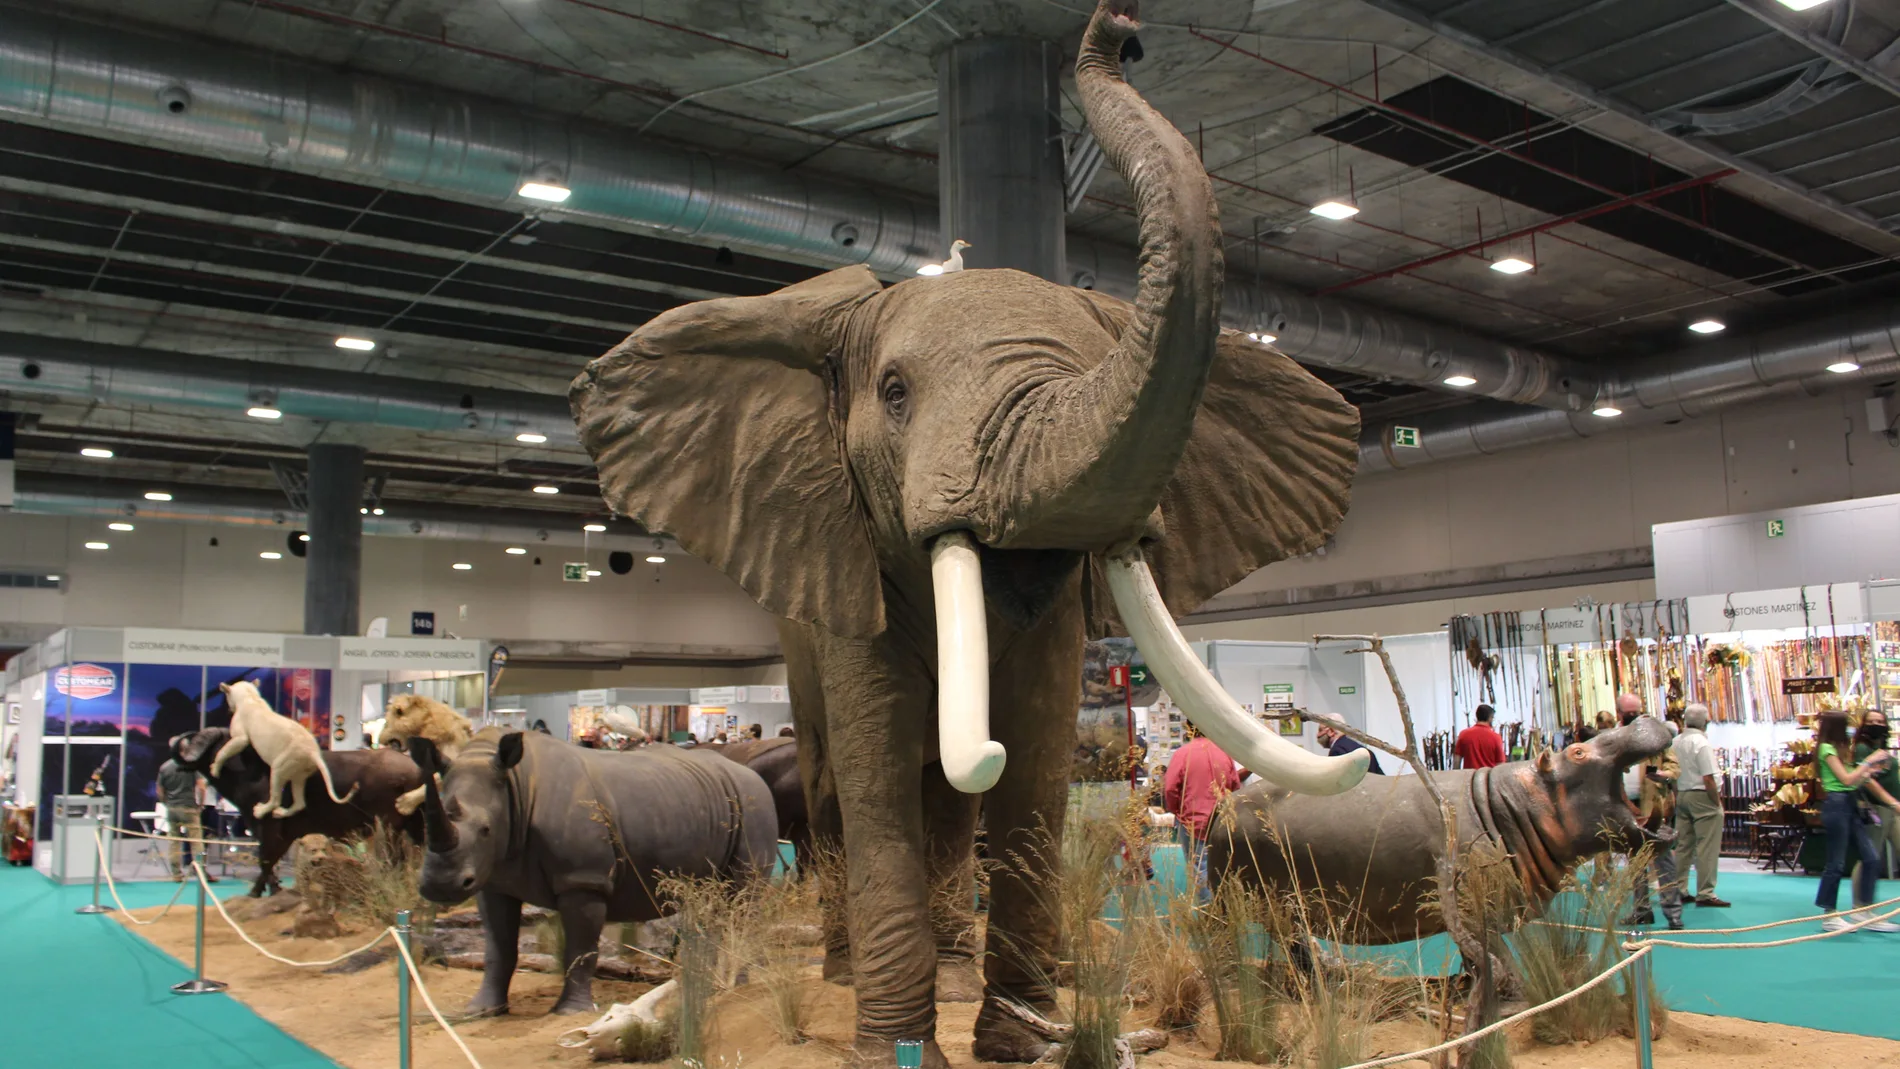 Un gran elefante representa la taxidermia en el centro del pabellón